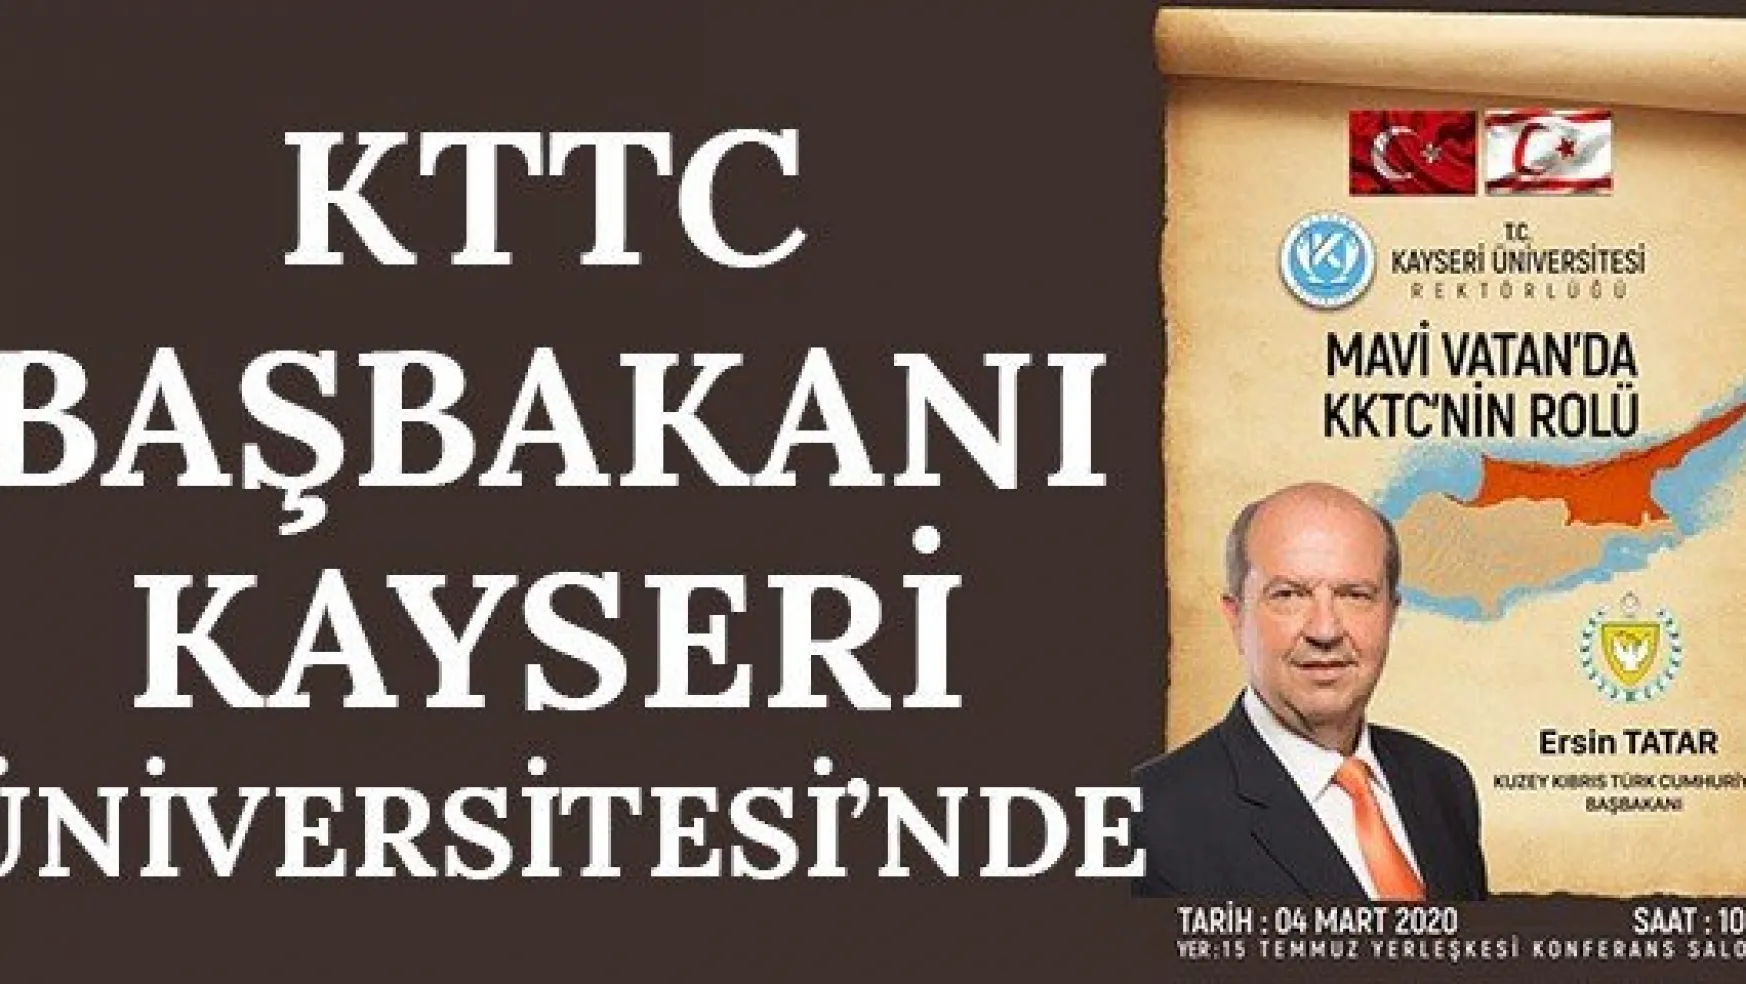 KTTC Başbakanı Kayseri Üniversitesi'nde